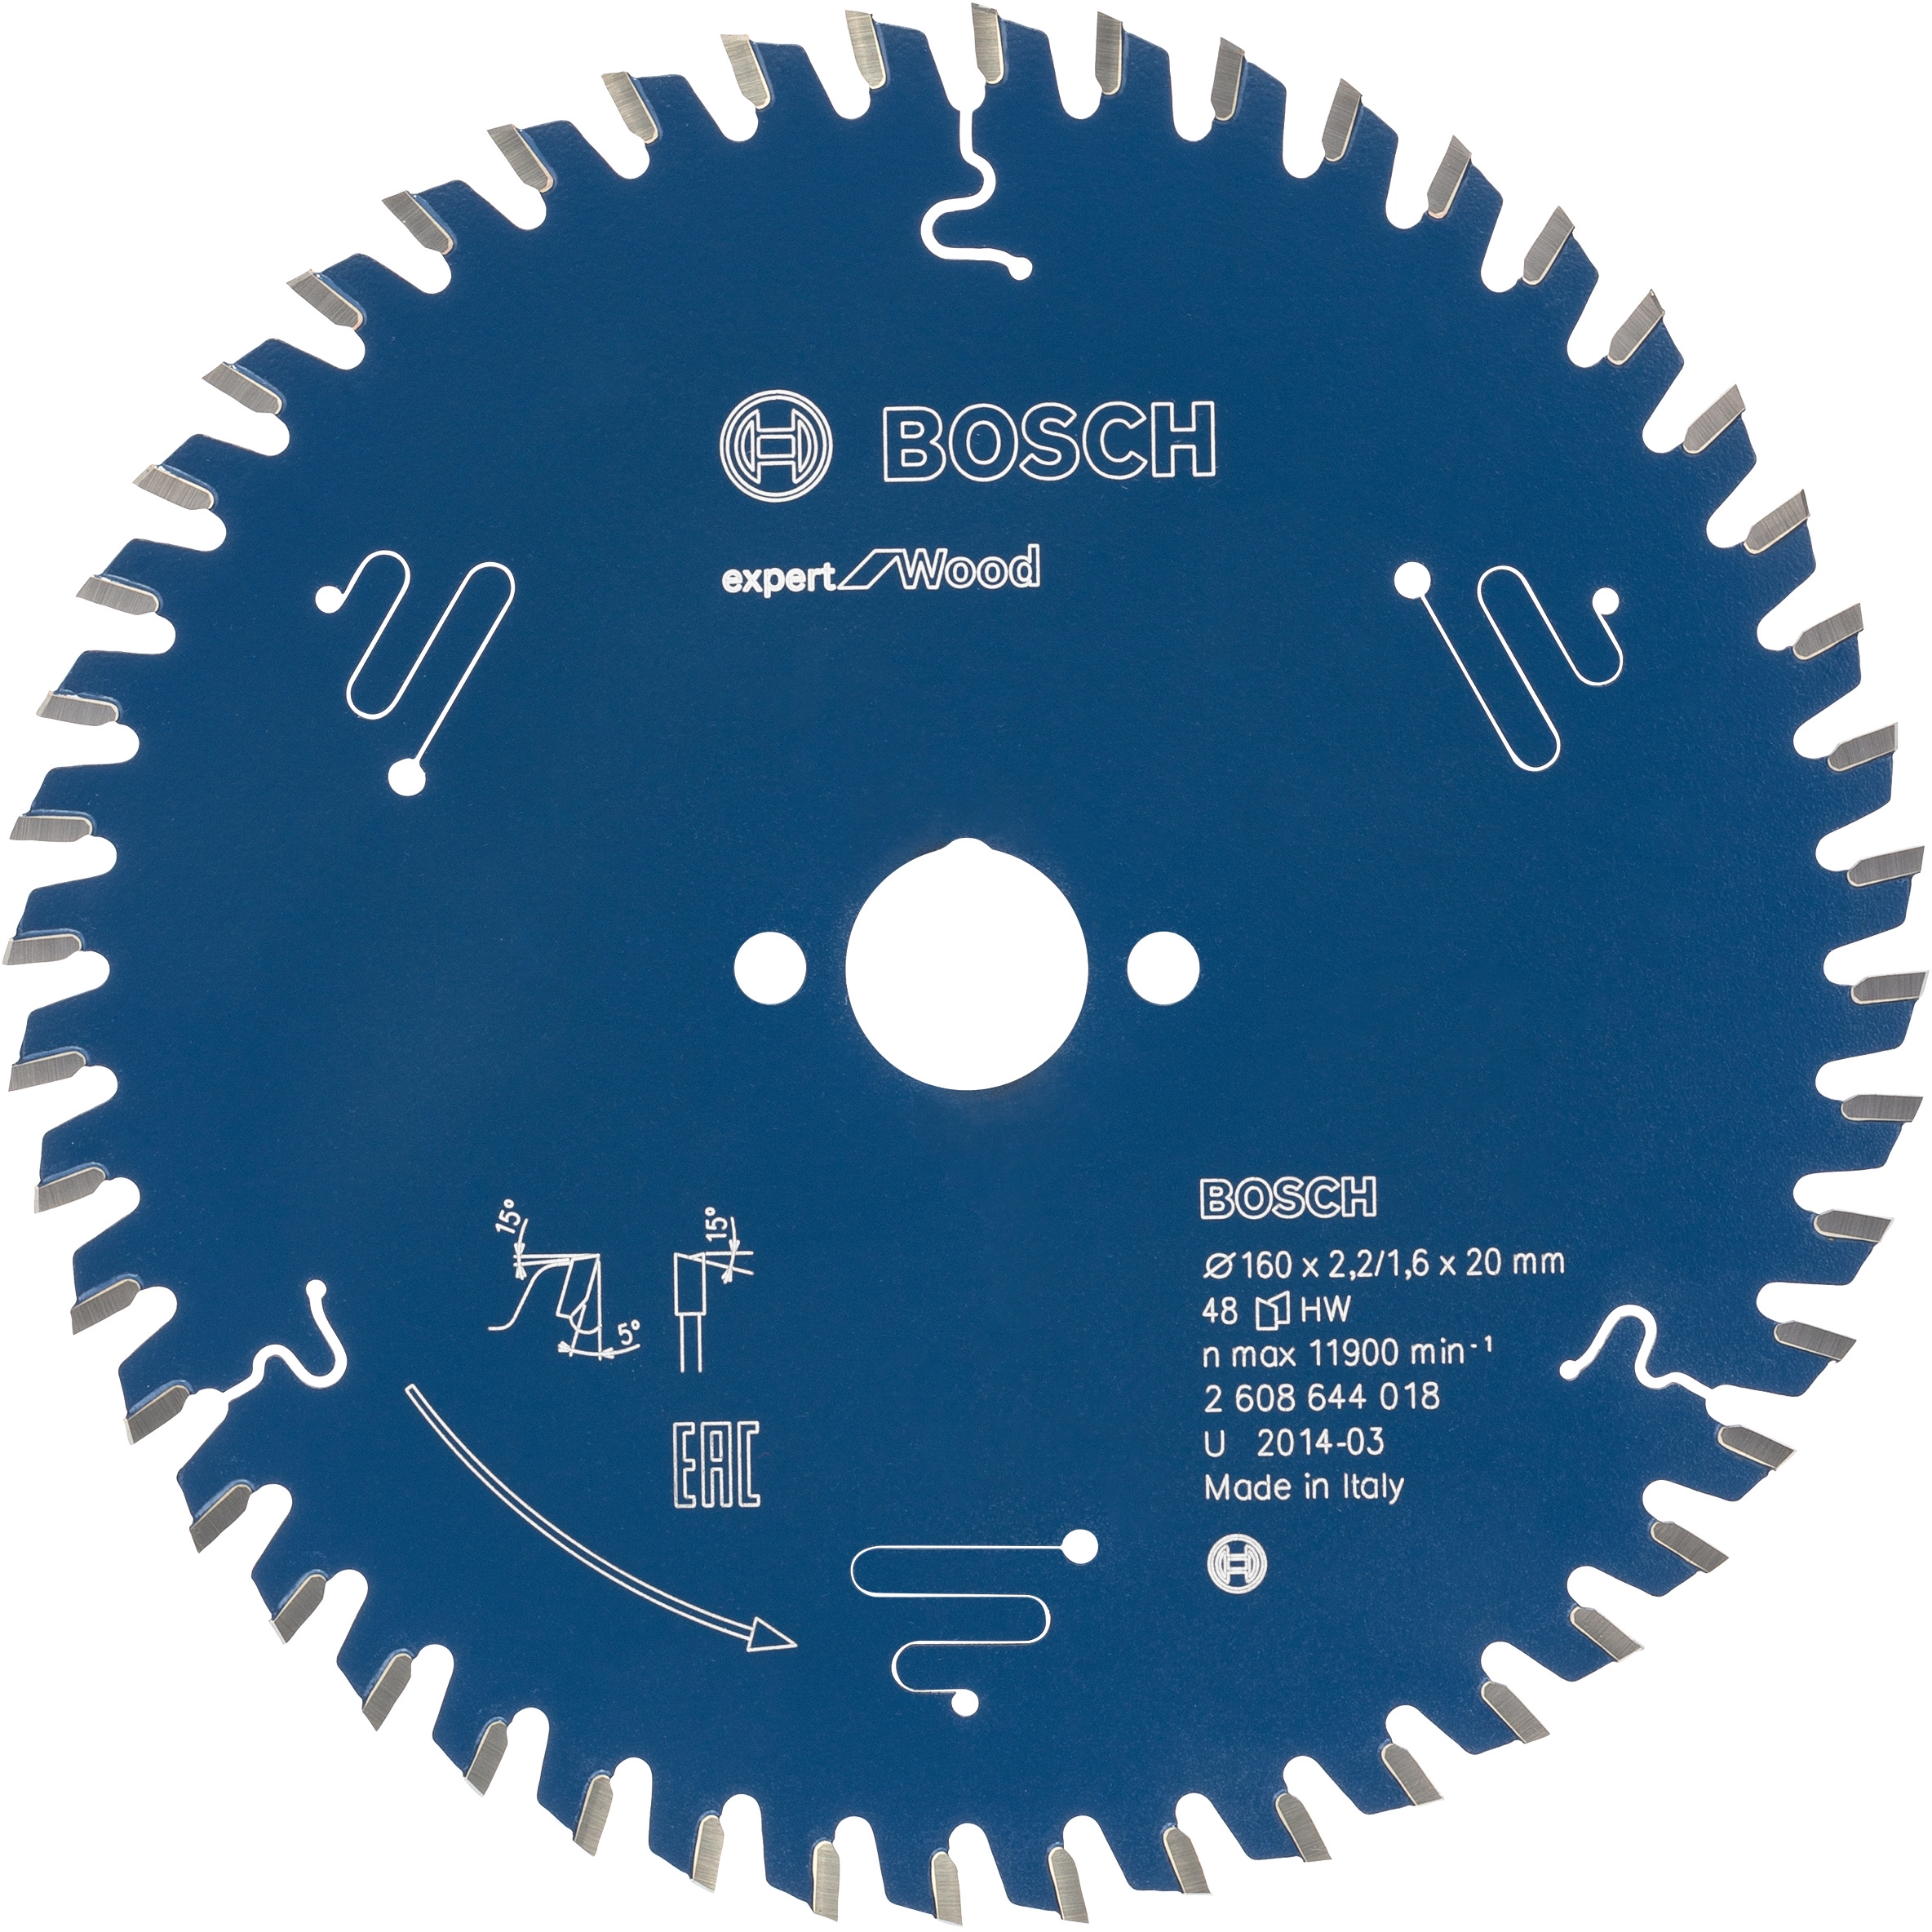 Bosch Kreissägeblatt Expert for Wood 160 mm x 20 mm x 2,2 mm kaufen bei OBI